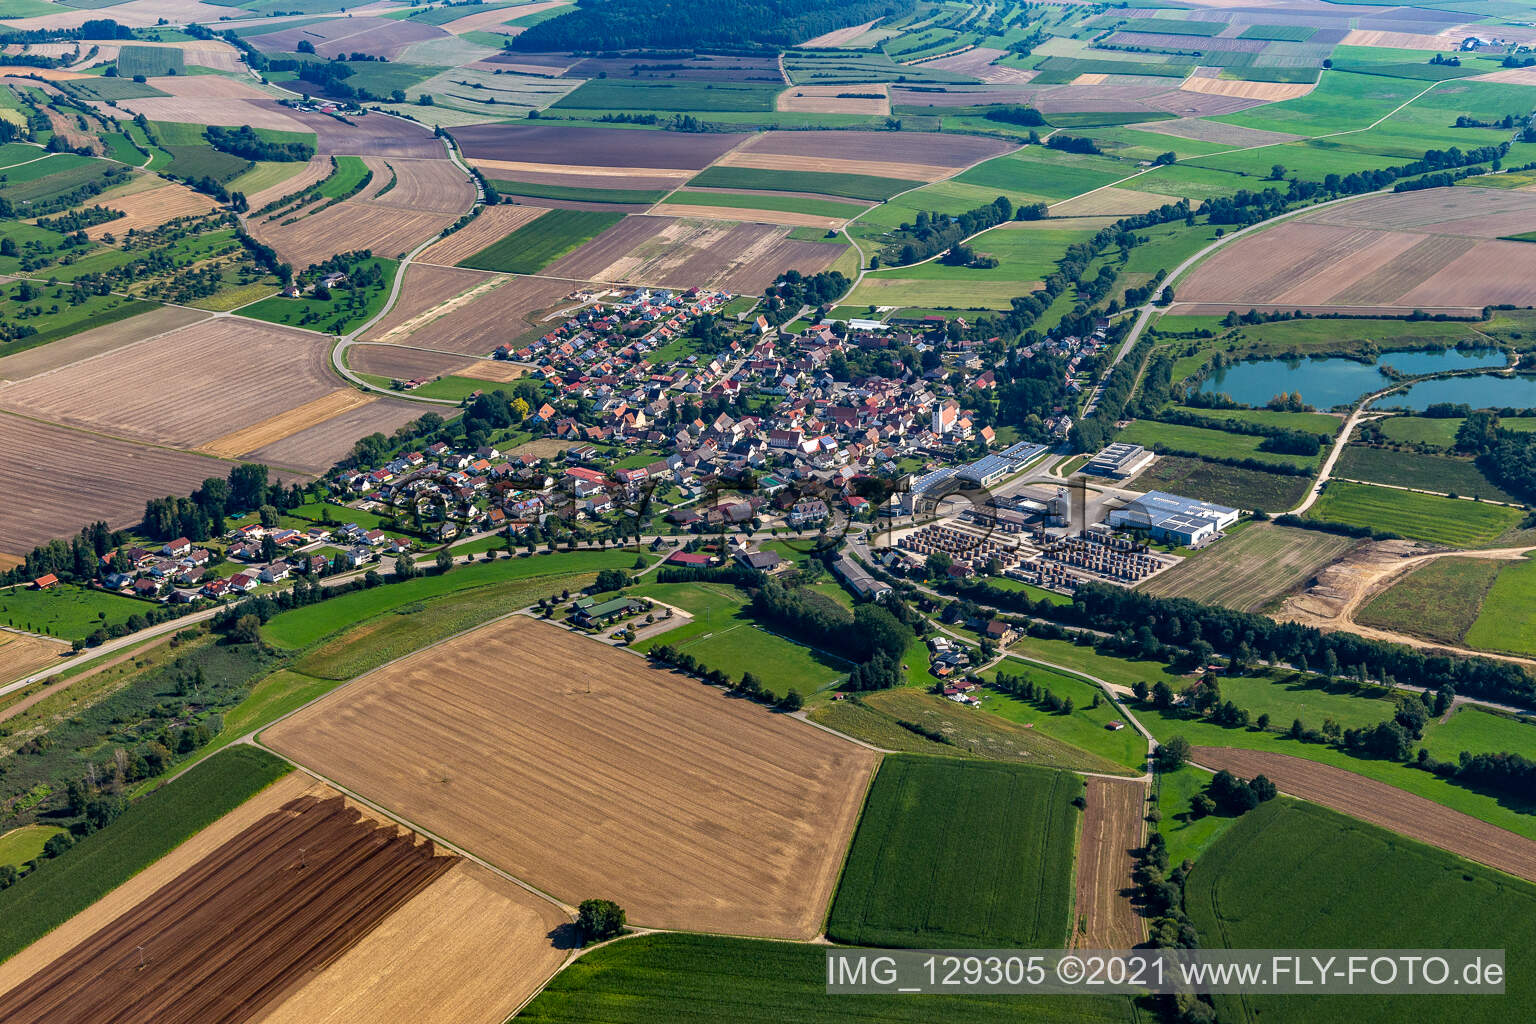 Vue aérienne de Vue de la ville en bordure des champs et zones agricoles d'Andelfingen à Langenenslingen dans le département Bade-Wurtemberg, Allemagne